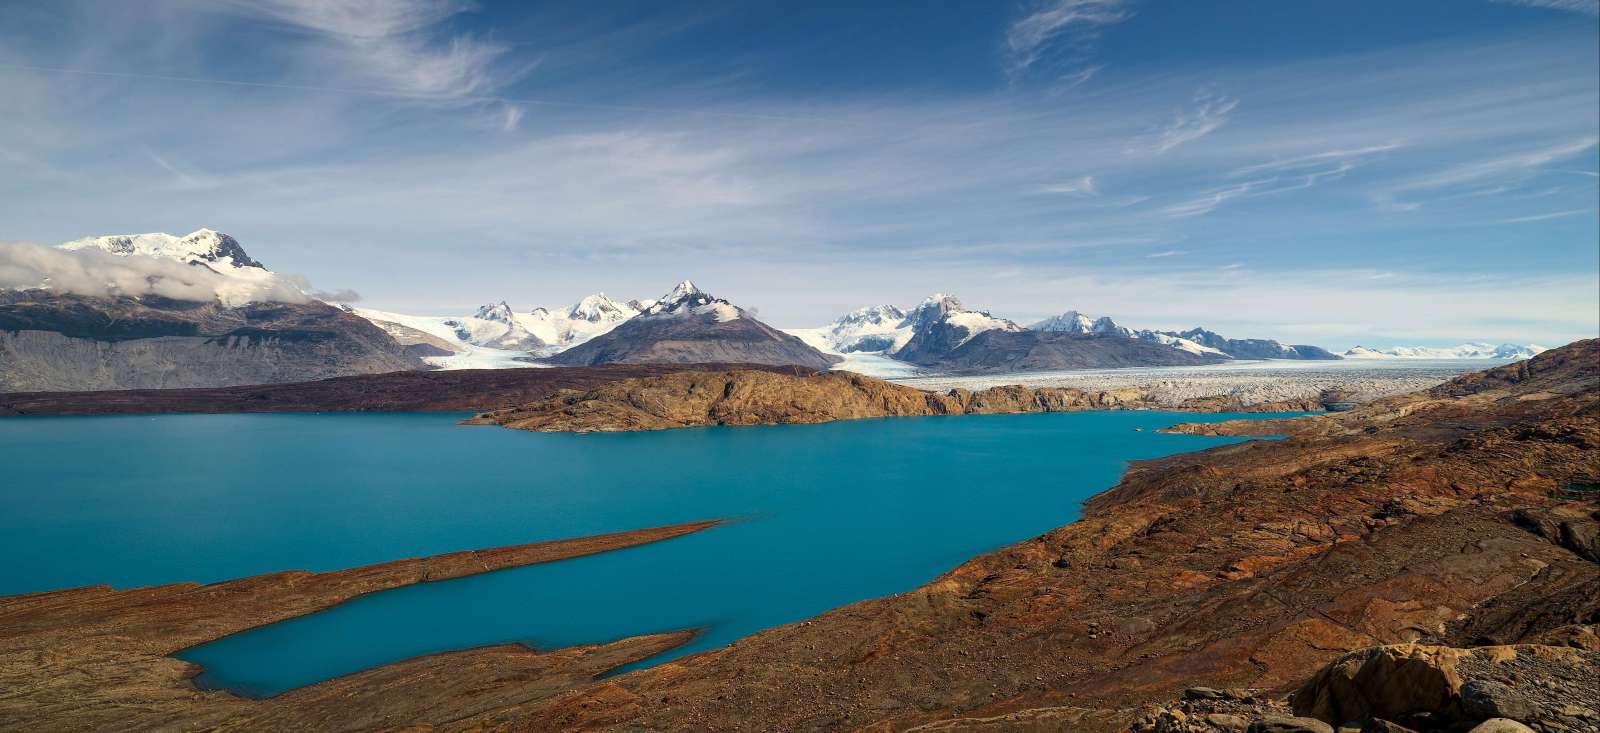 Voyage sur l'eau : Rendez-vous en Patagonie